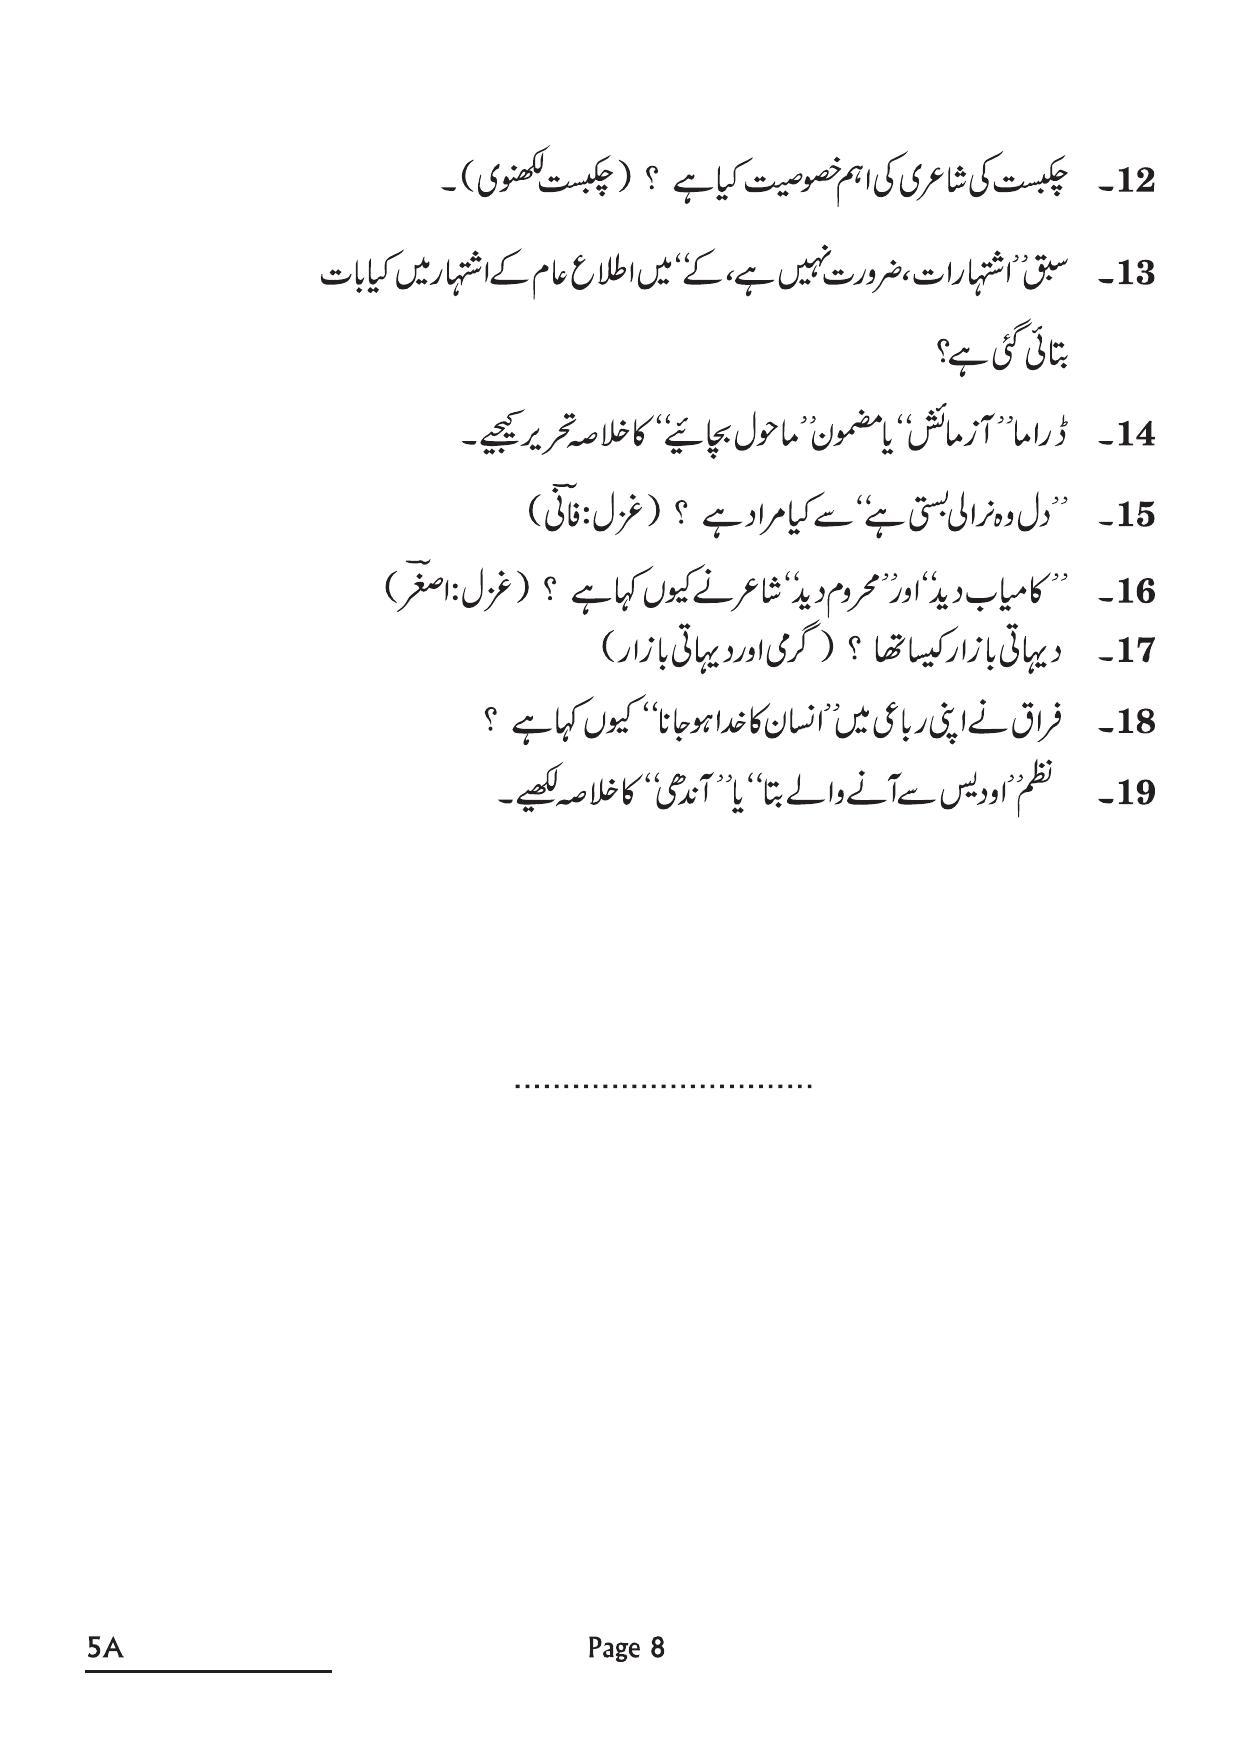 CBSE Class 10 5A Urdu A 2022 Question Paper - Page 8